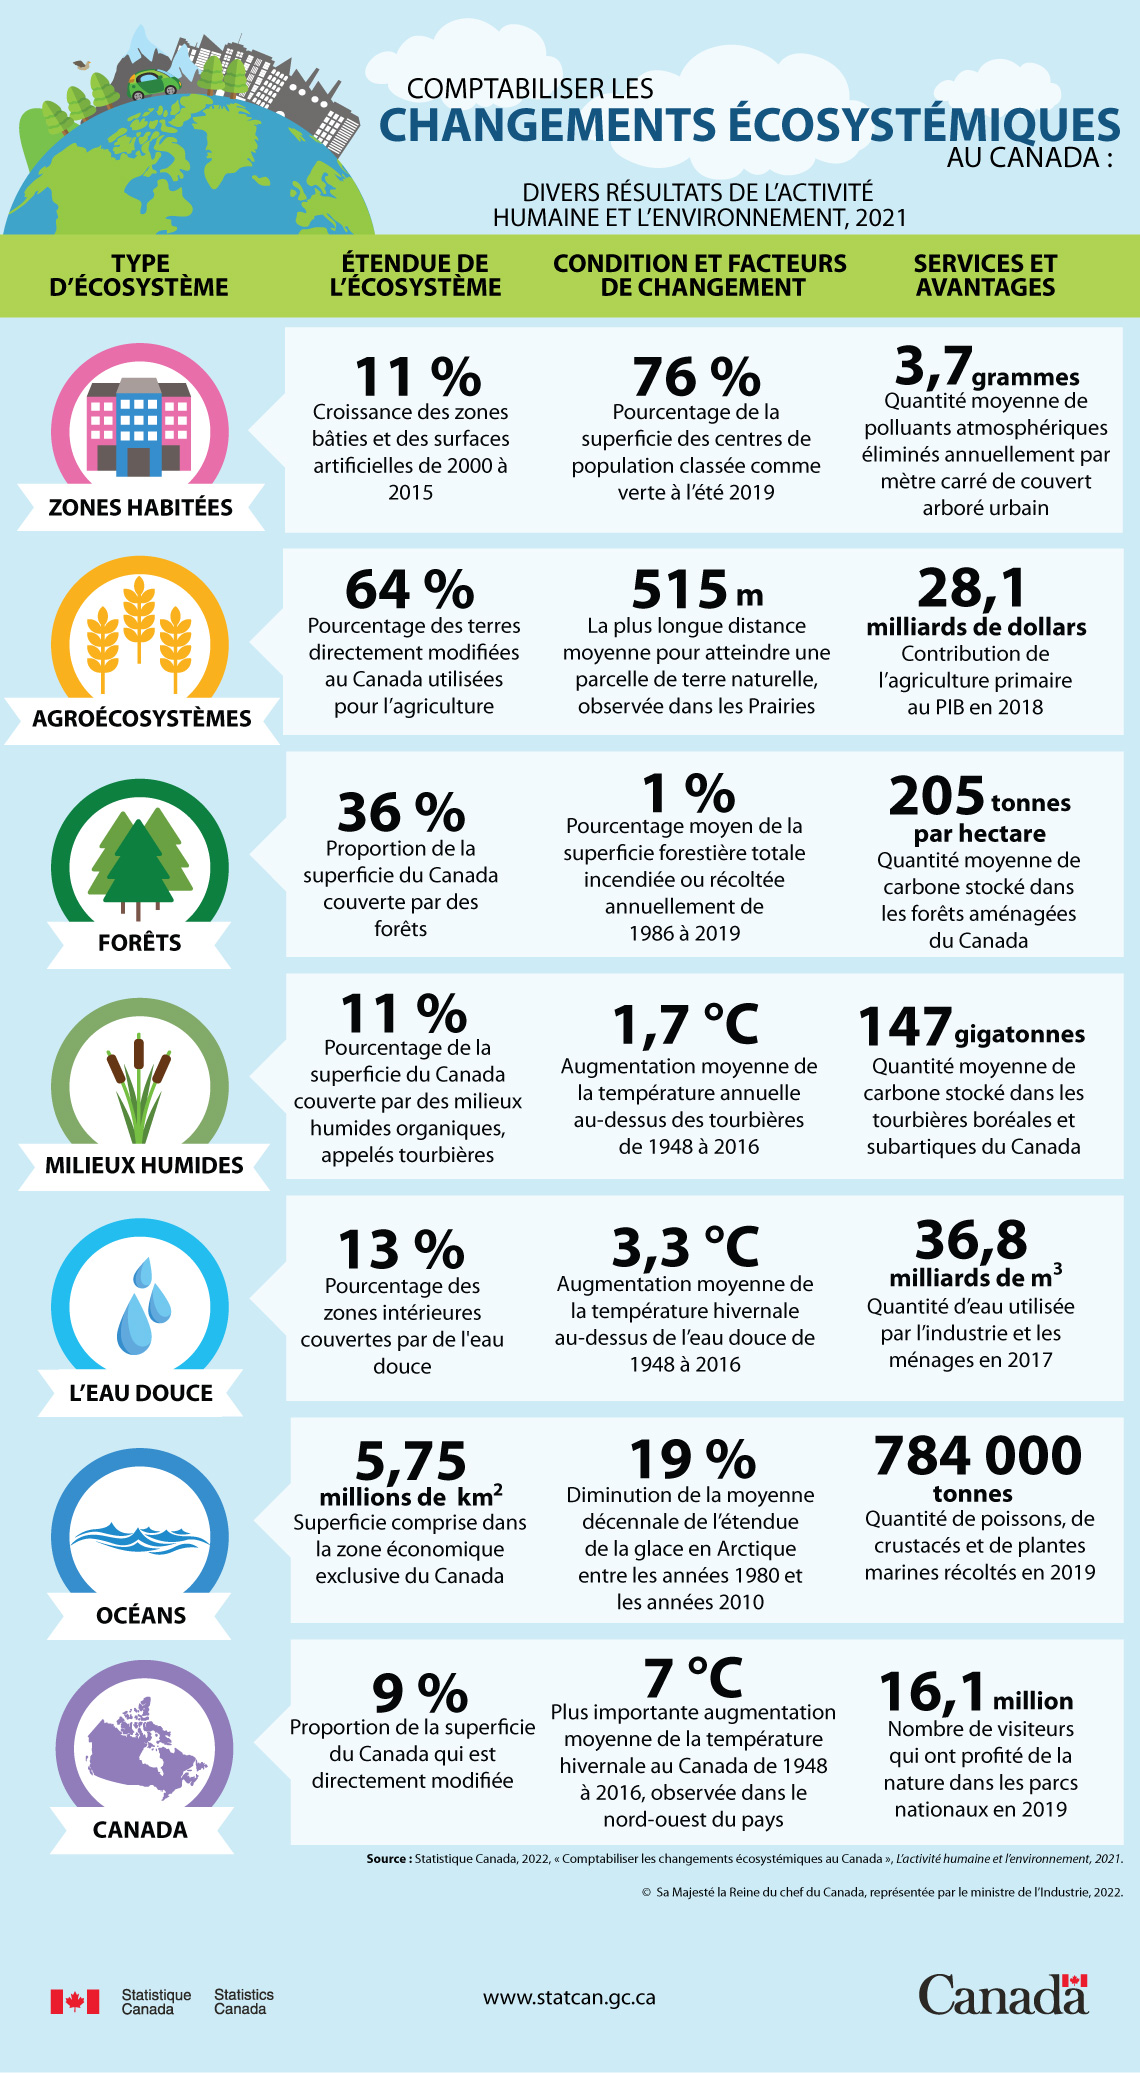 Infographie : Comptabiliser les changements écosystémiques au Canada : Divers résultats de L’activité humaine et l’environnement, 2021